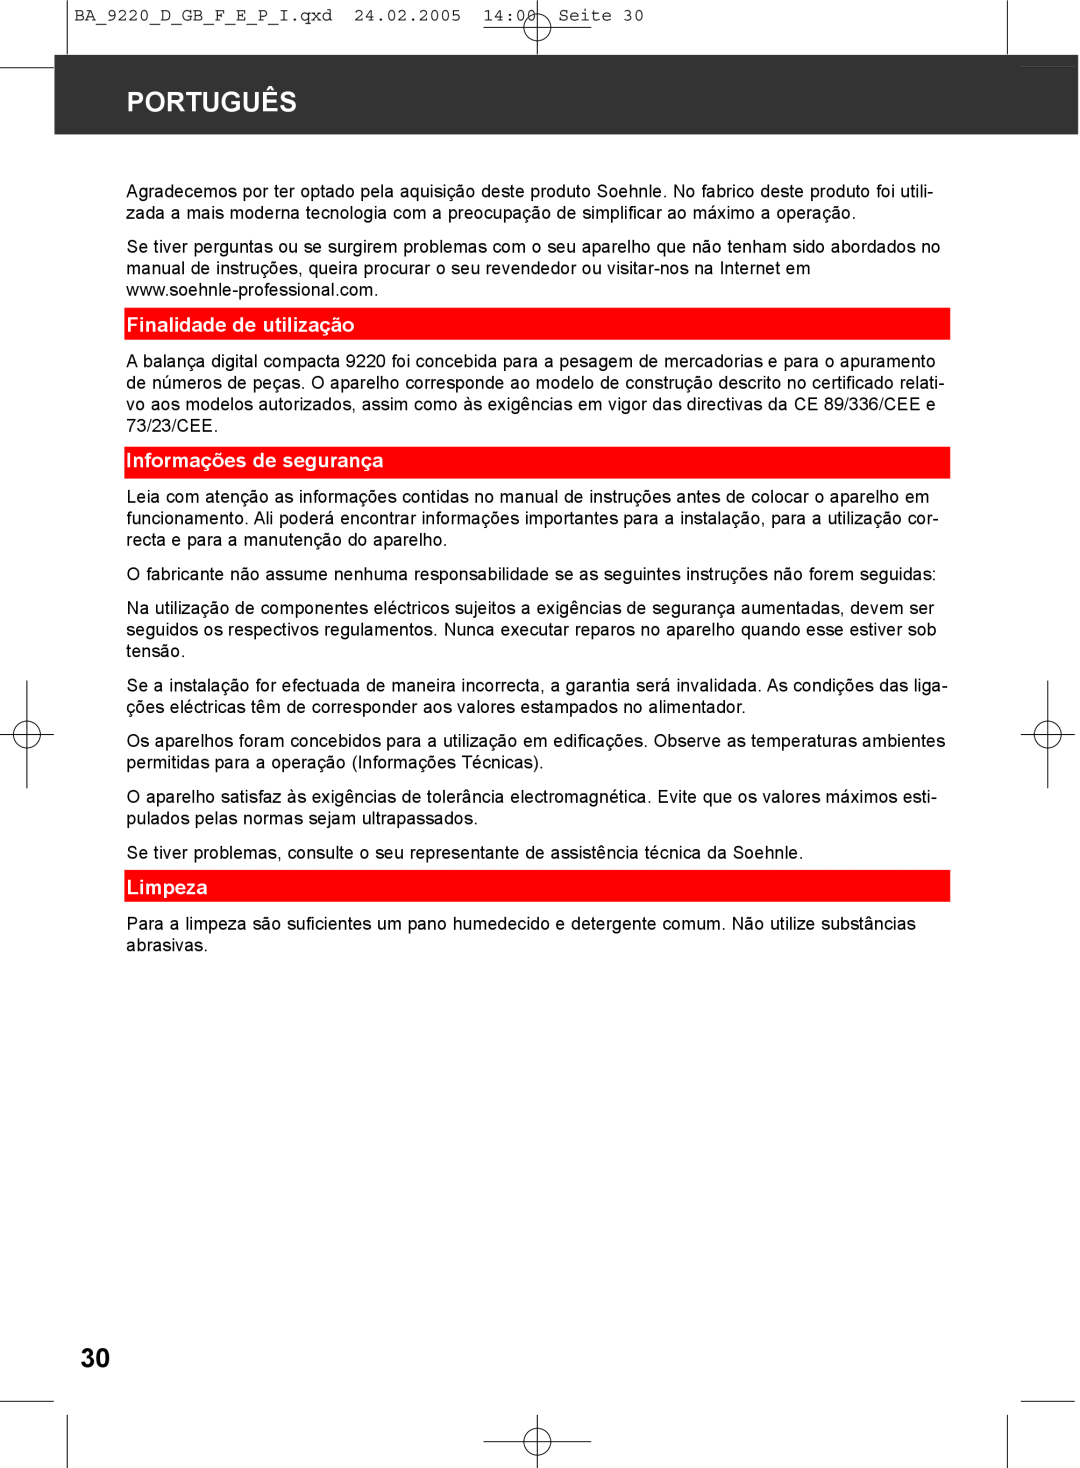 Soehnle 9220 manual Português, Finalidade de utilização, Informações de segurança, Limpeza 